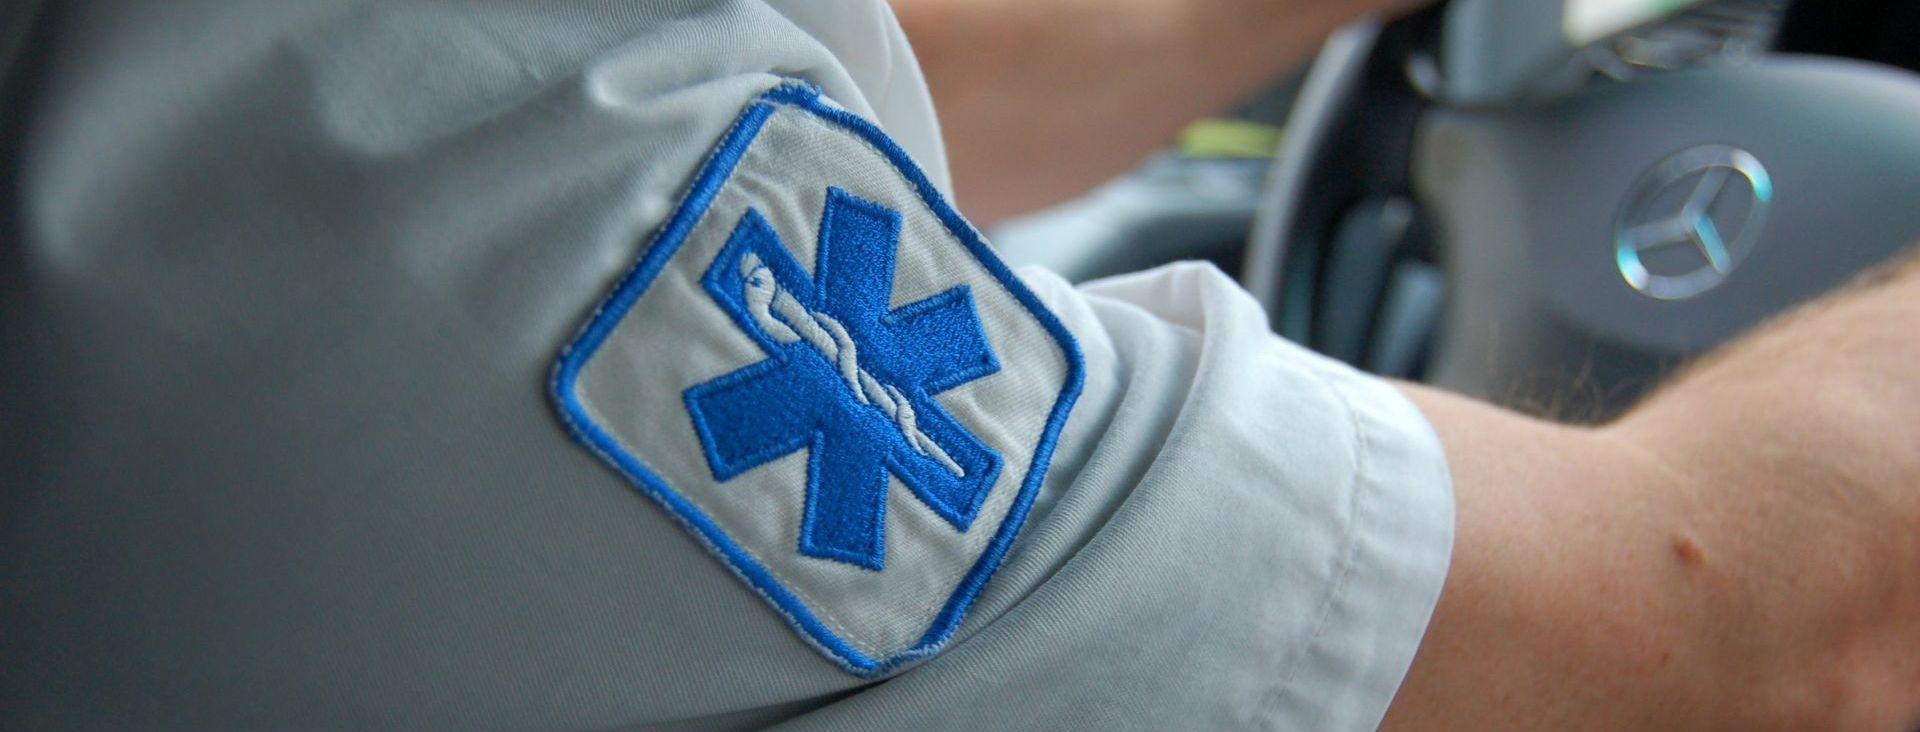 Un uniforme d'ambulancier